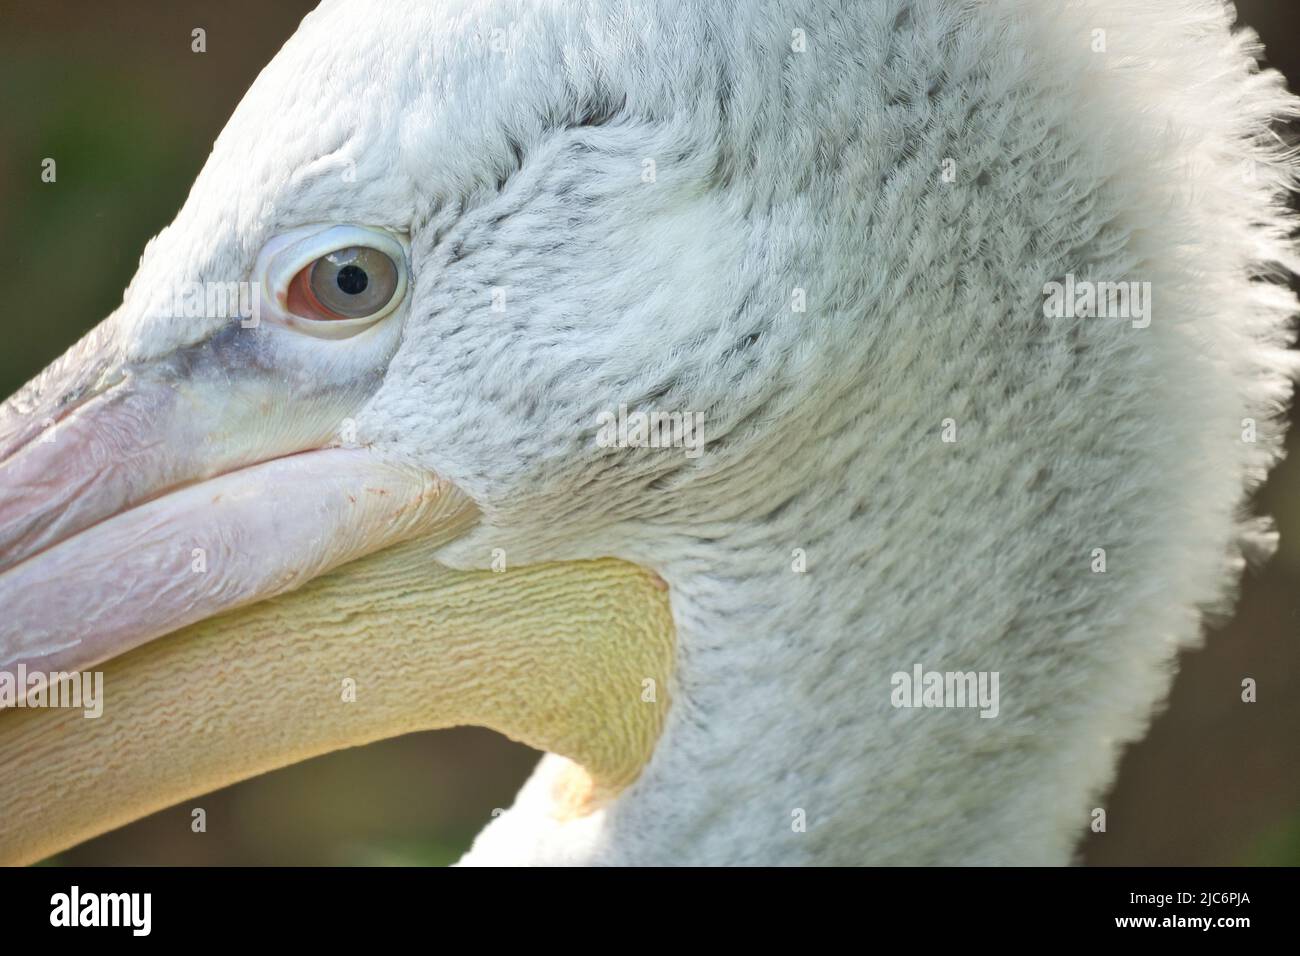 Pelican in ritratto. Piumaggio bianco, becco grande, in un grande uccello marino. Foto animale Foto Stock